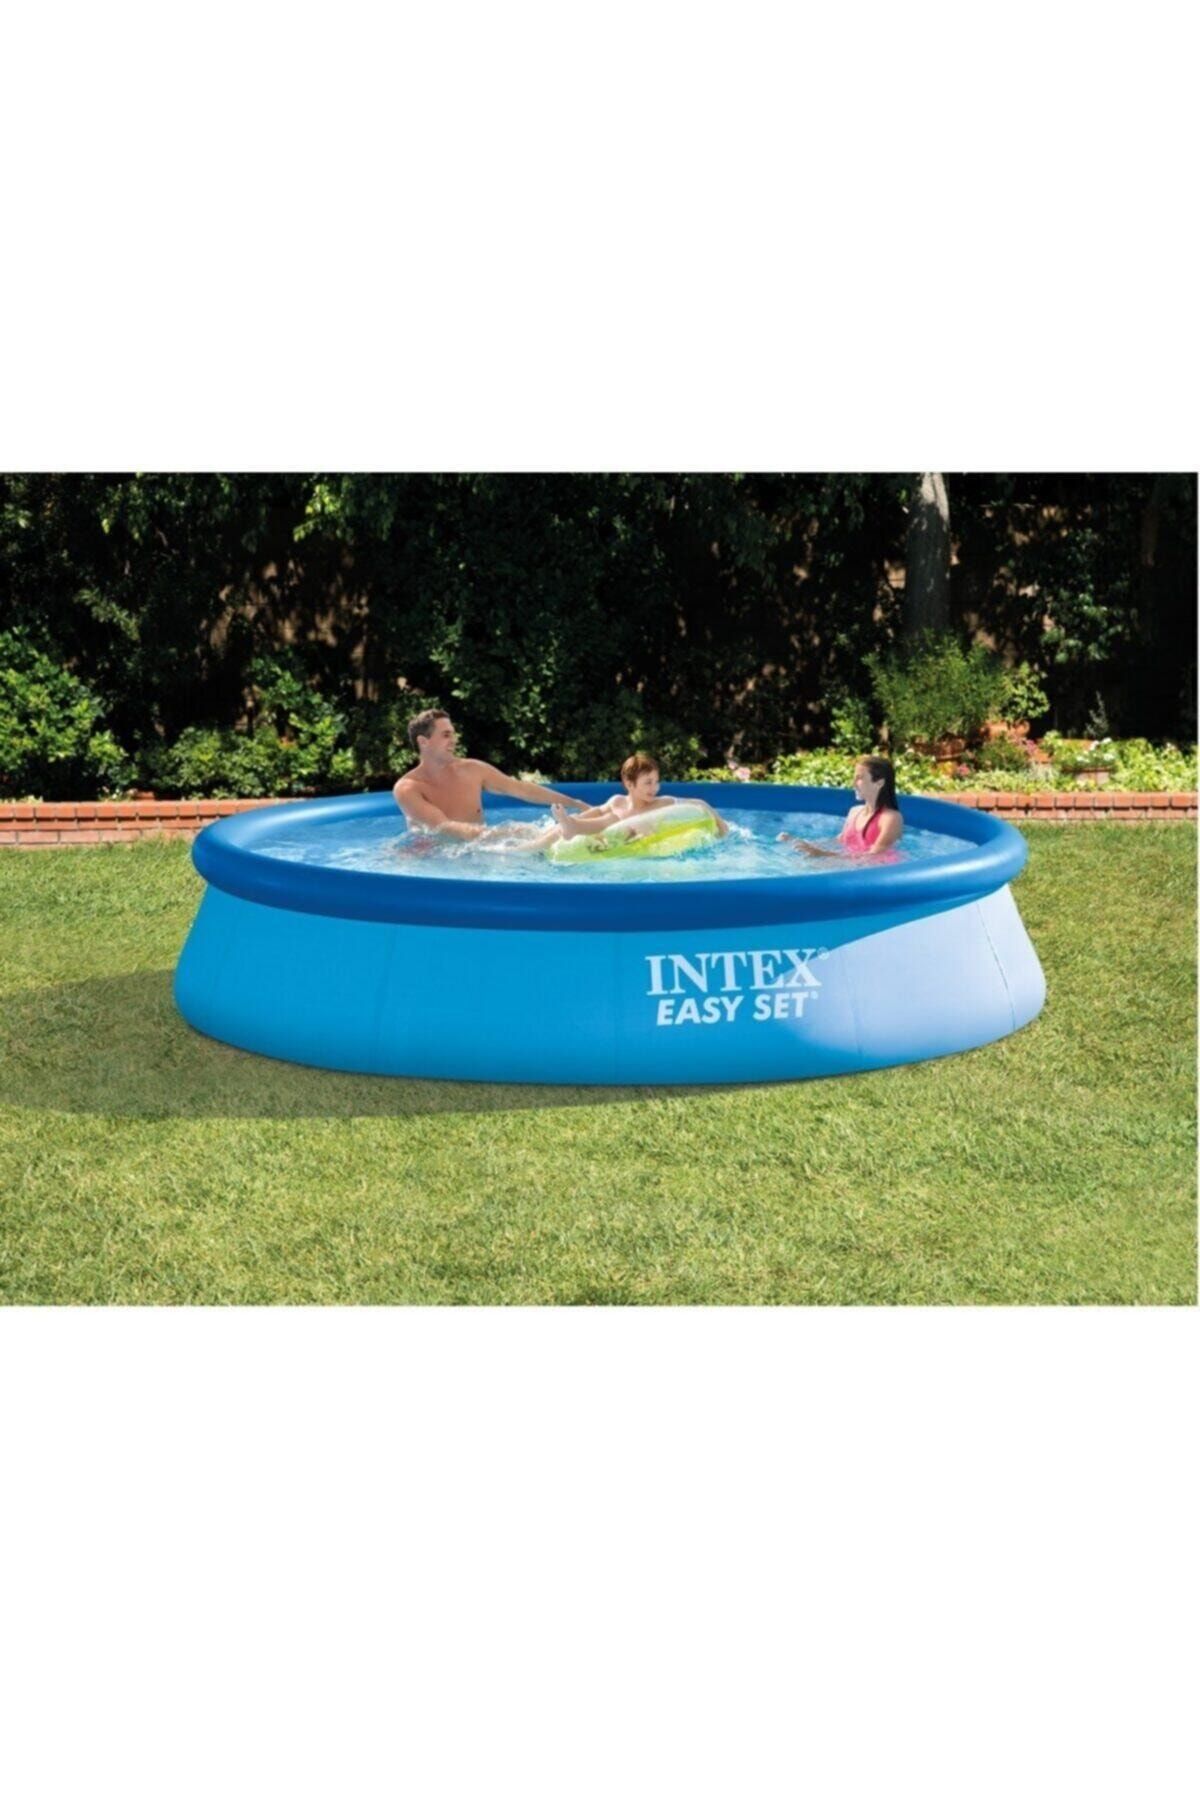 Intex Easy Mavi Renkli Kolay Kurulum Şişme Havuz,366x76cm Büyük Boy Aile Havuzu-28130